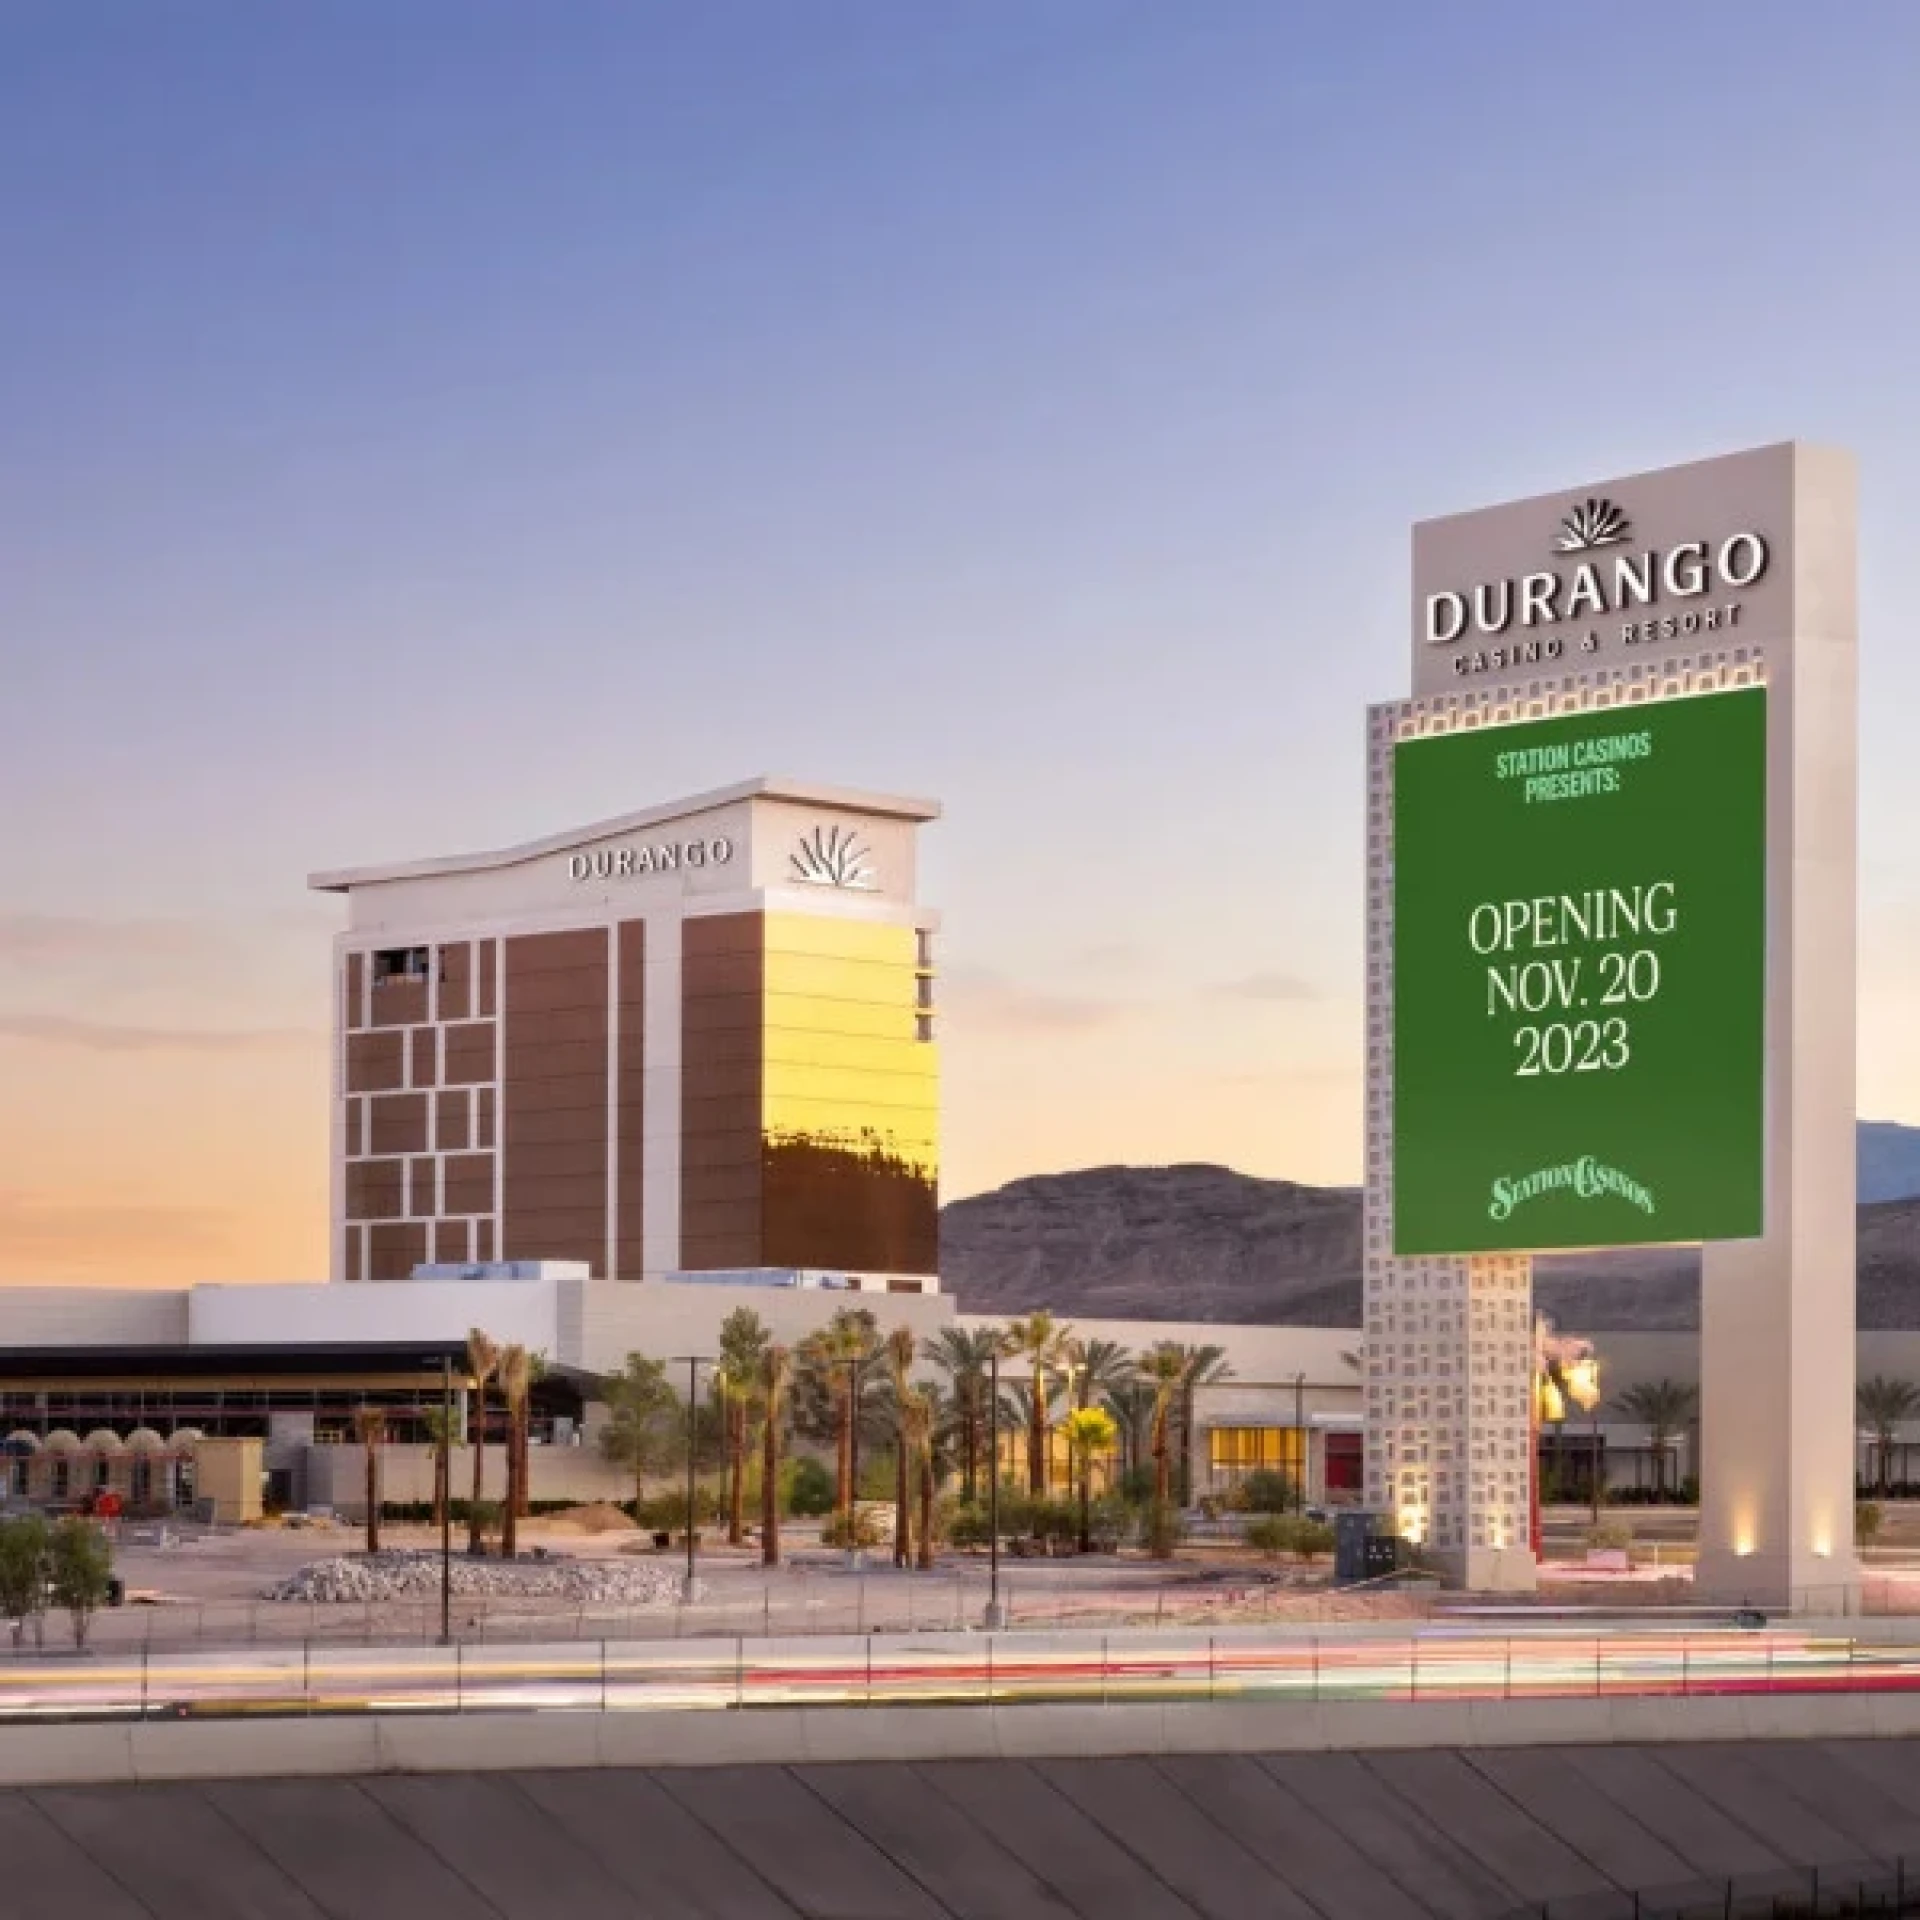 Durango Casino Resort